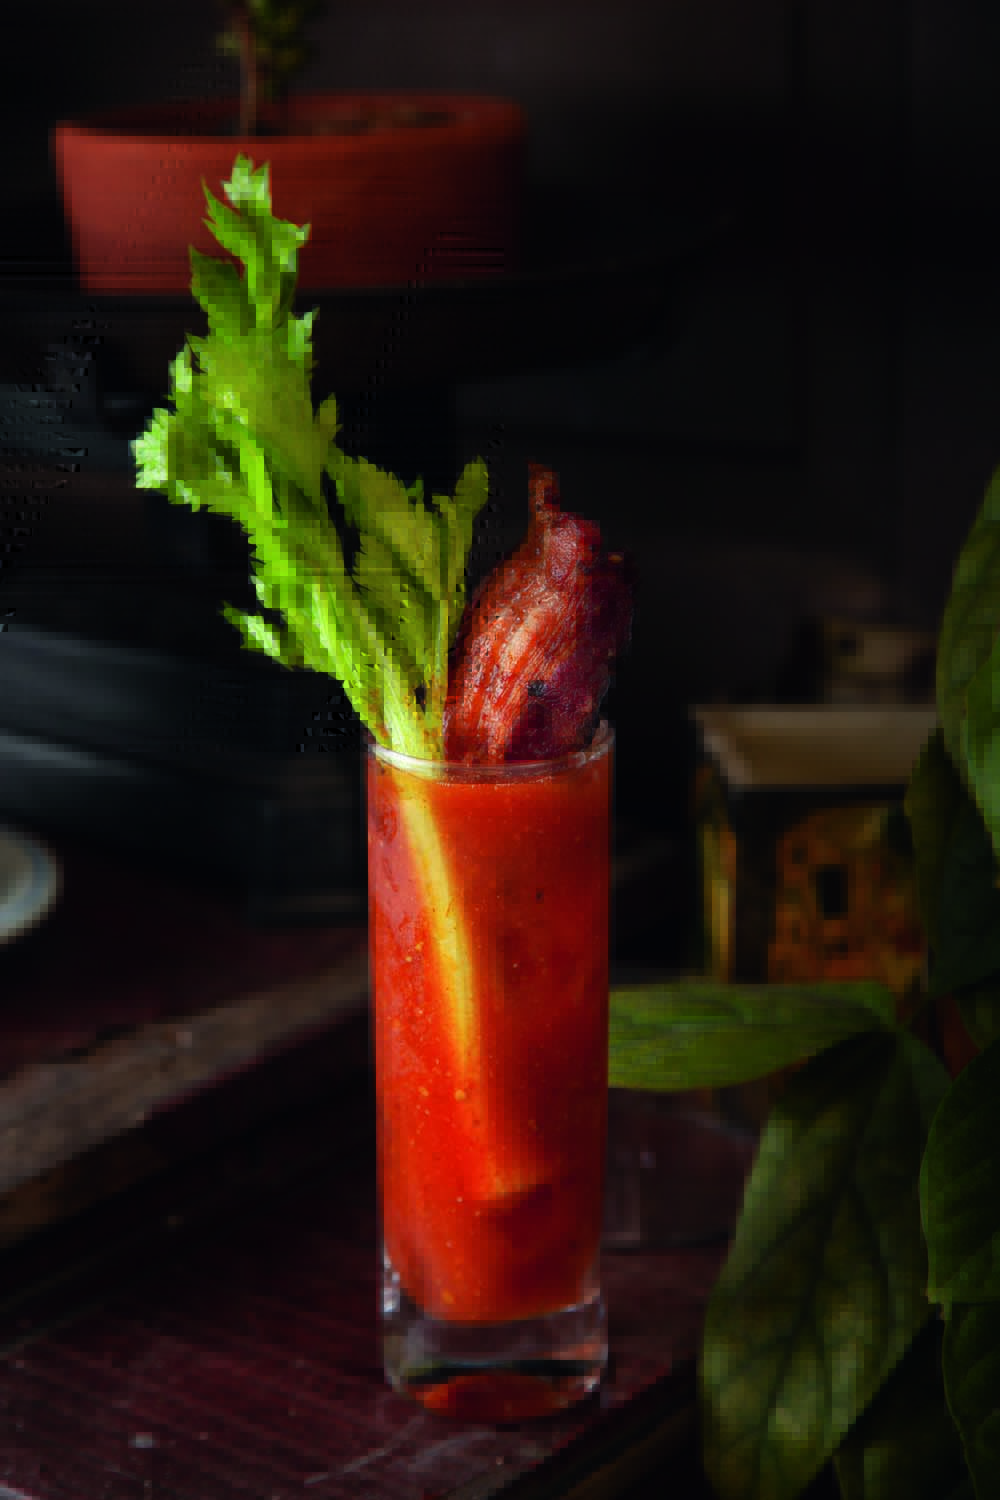 Drinque de cor avermelhada servido em copo longo guarnecido por um talo de salsão e bacon